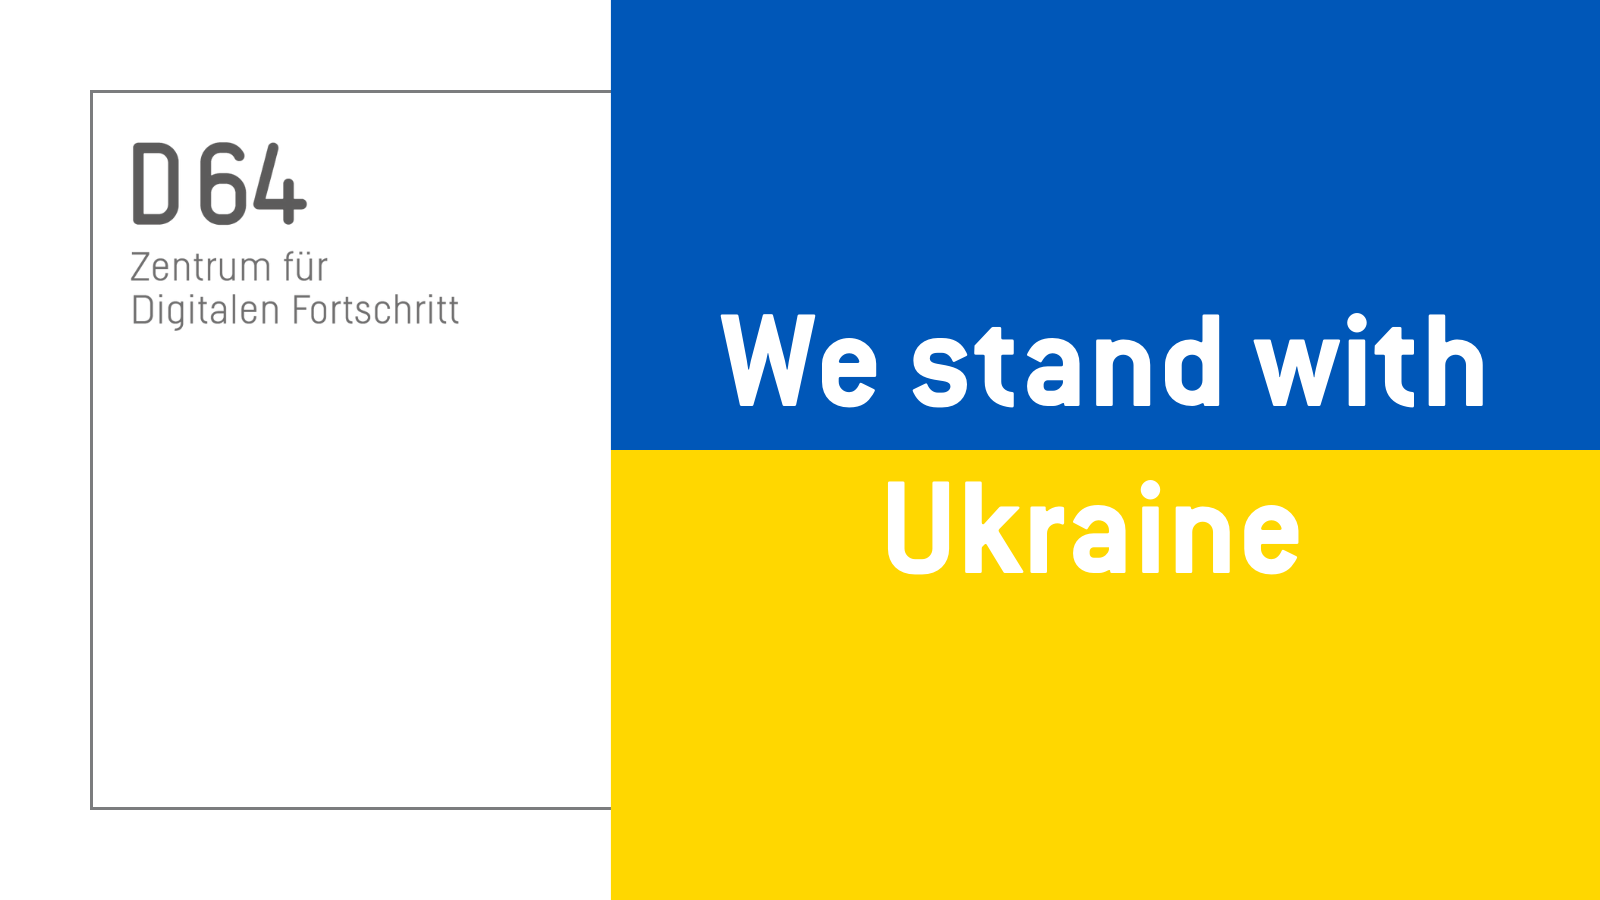 Sharepic von D64. Im linken Drittel steht vor weißem Grund: "D64 Zentrum für Digitalen Fortschritt". In den rechten beiden Dritteln steht vor blau-gelben Grund: "We stand with Ukraine."